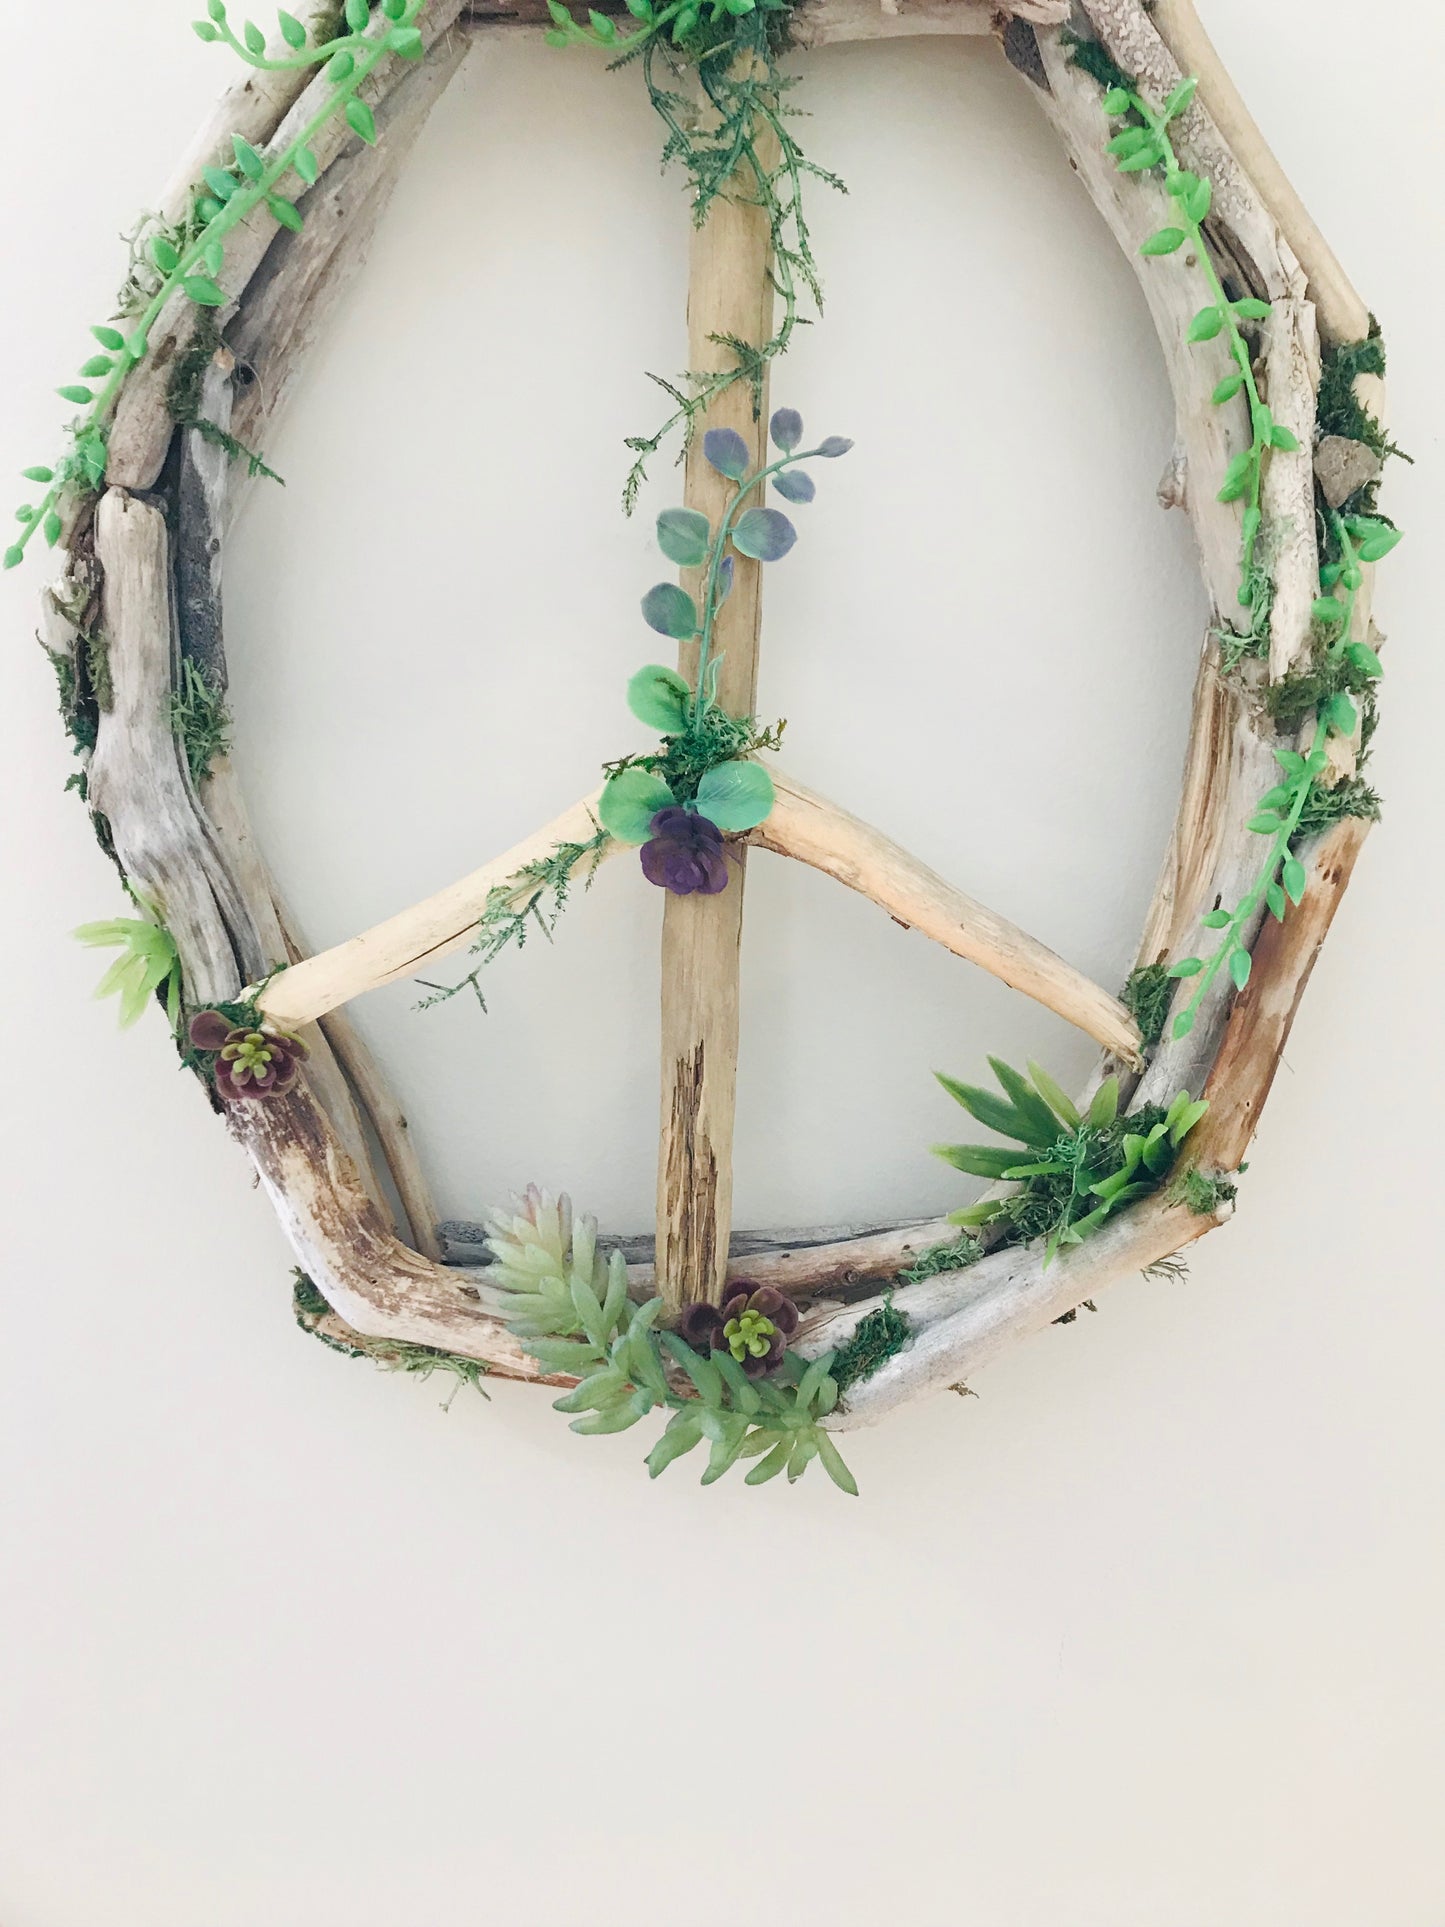 Medium Oval Driftwood Peace Sign Wreath